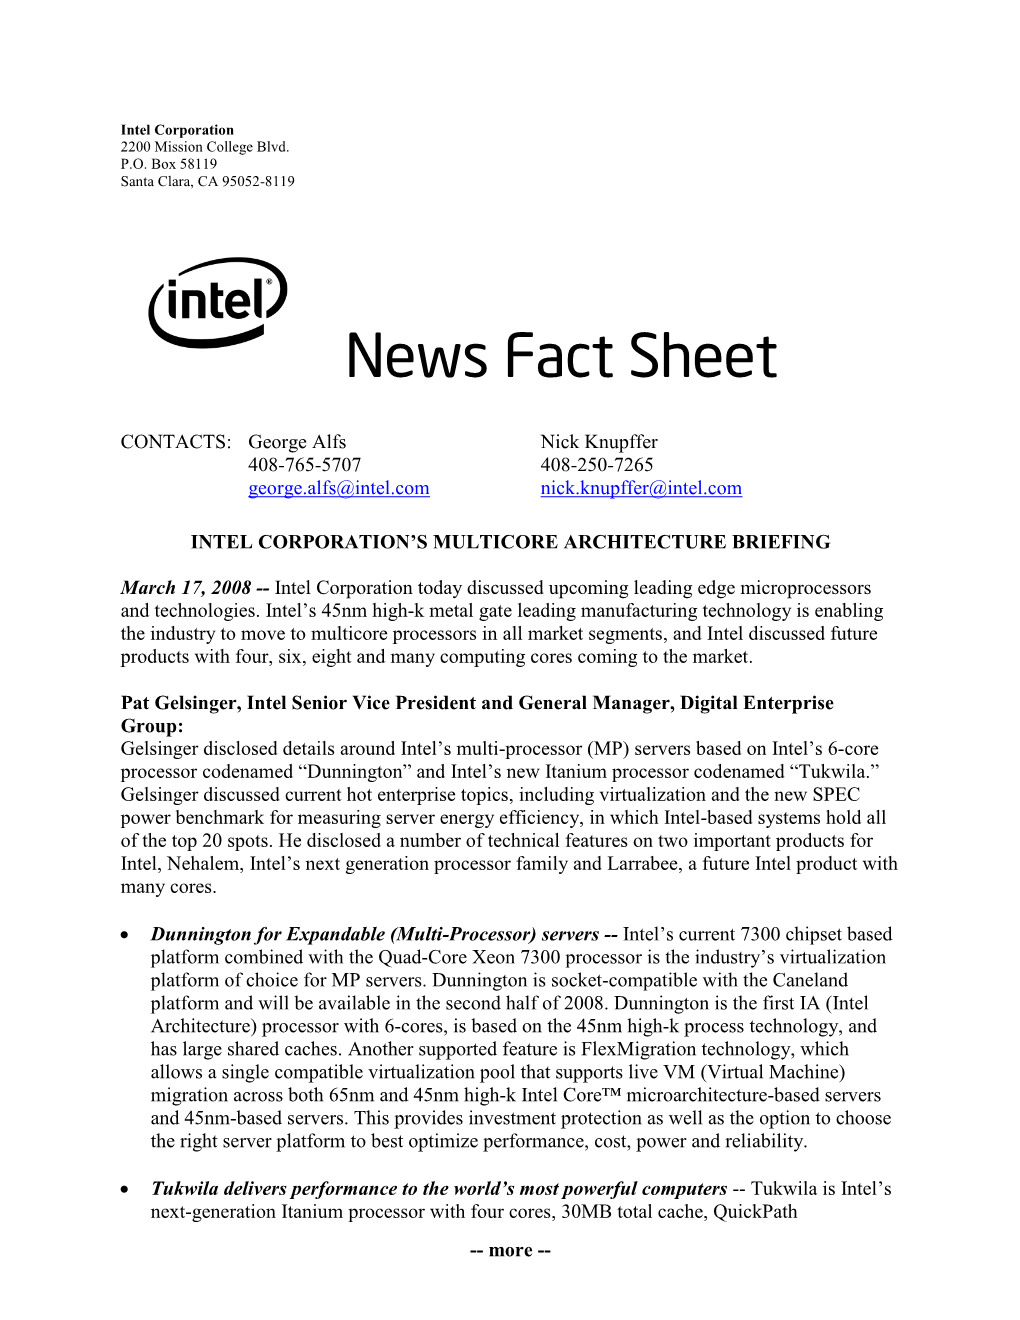 Intel Corporation's Multicore Architecture Briefing